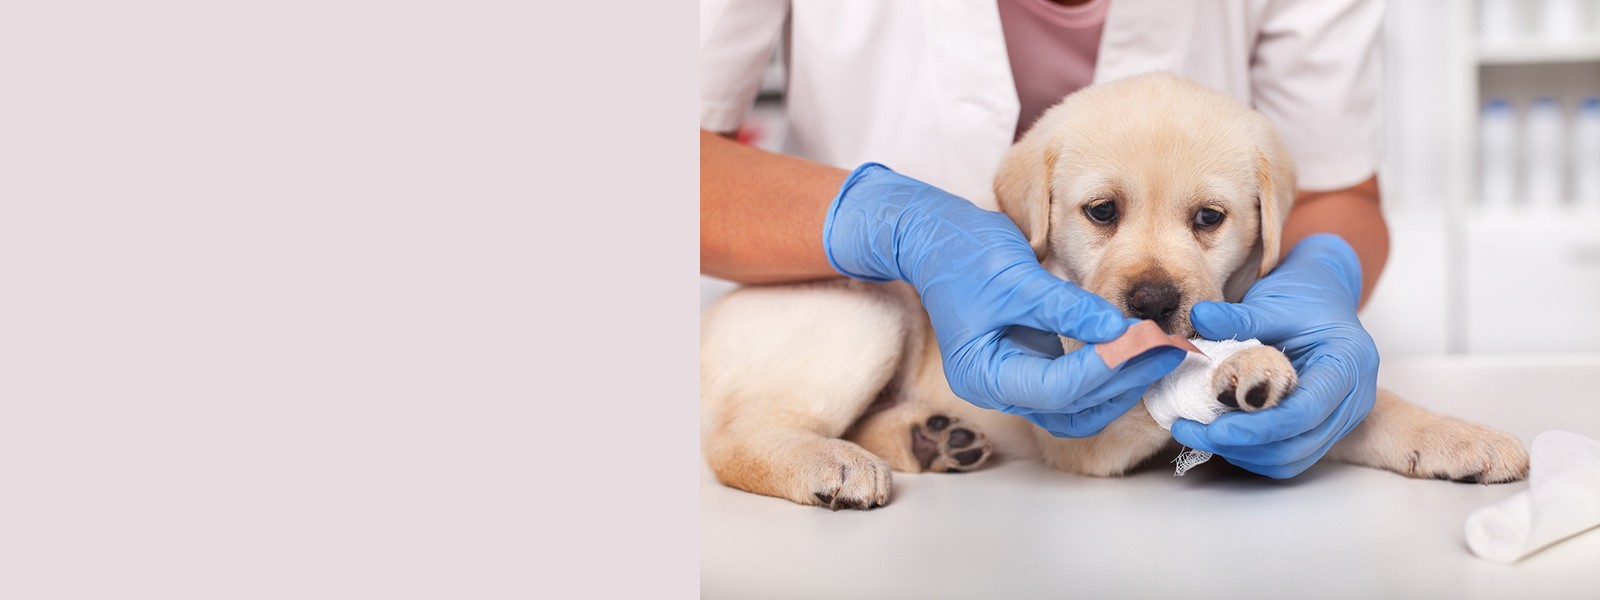 Emergências, consultas, cirurgias, reabilitação animal. Agende uma consulta com o veterinário especialista.